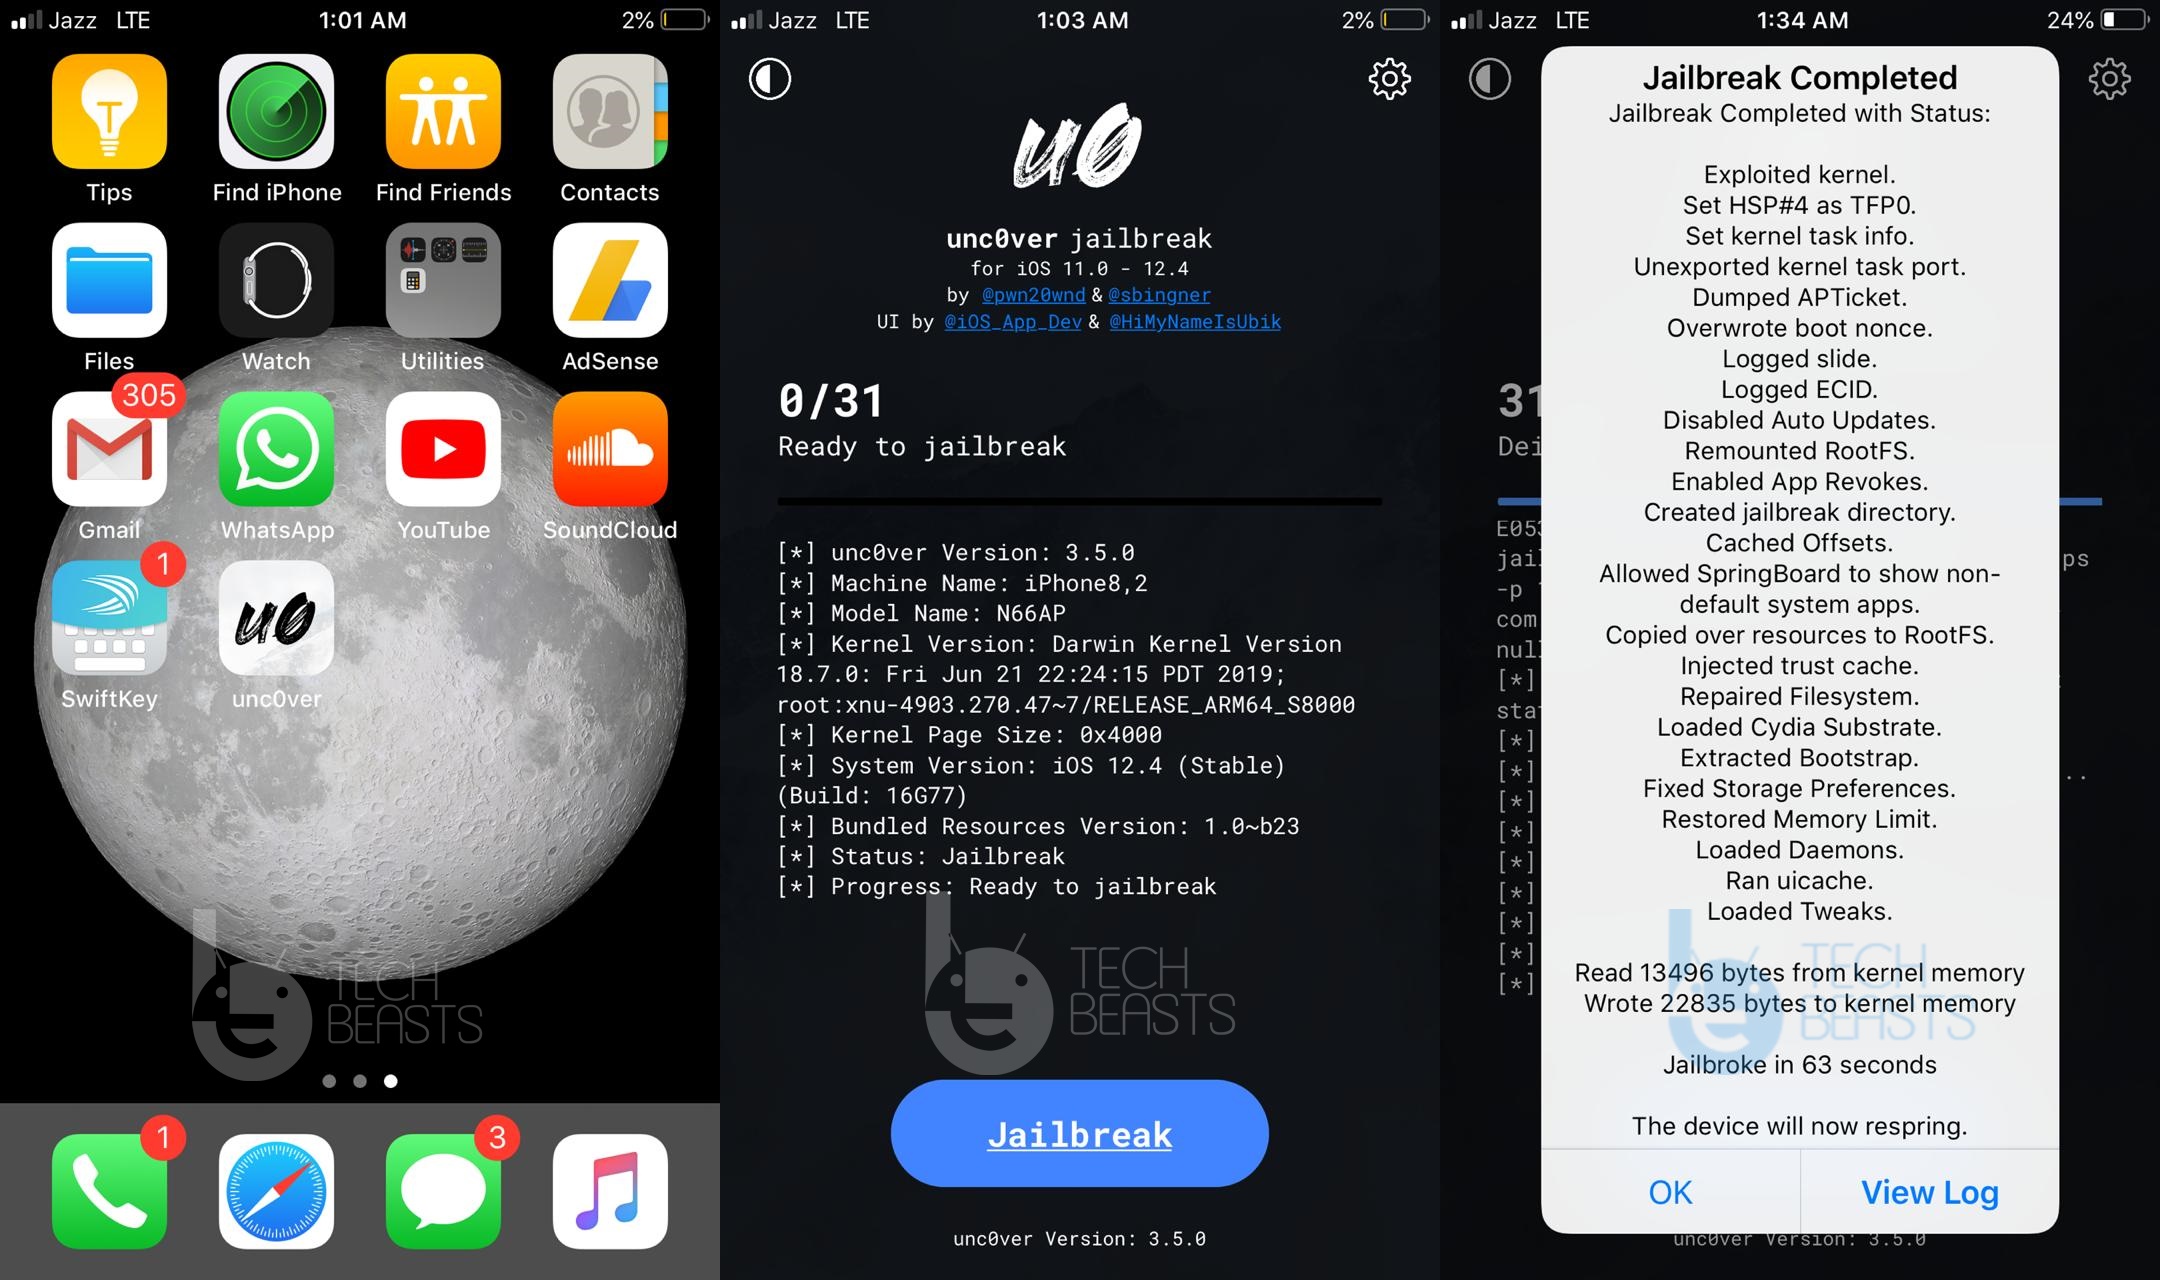 Jailbreak iOS 12.4 using Unc0ver 3.5.0